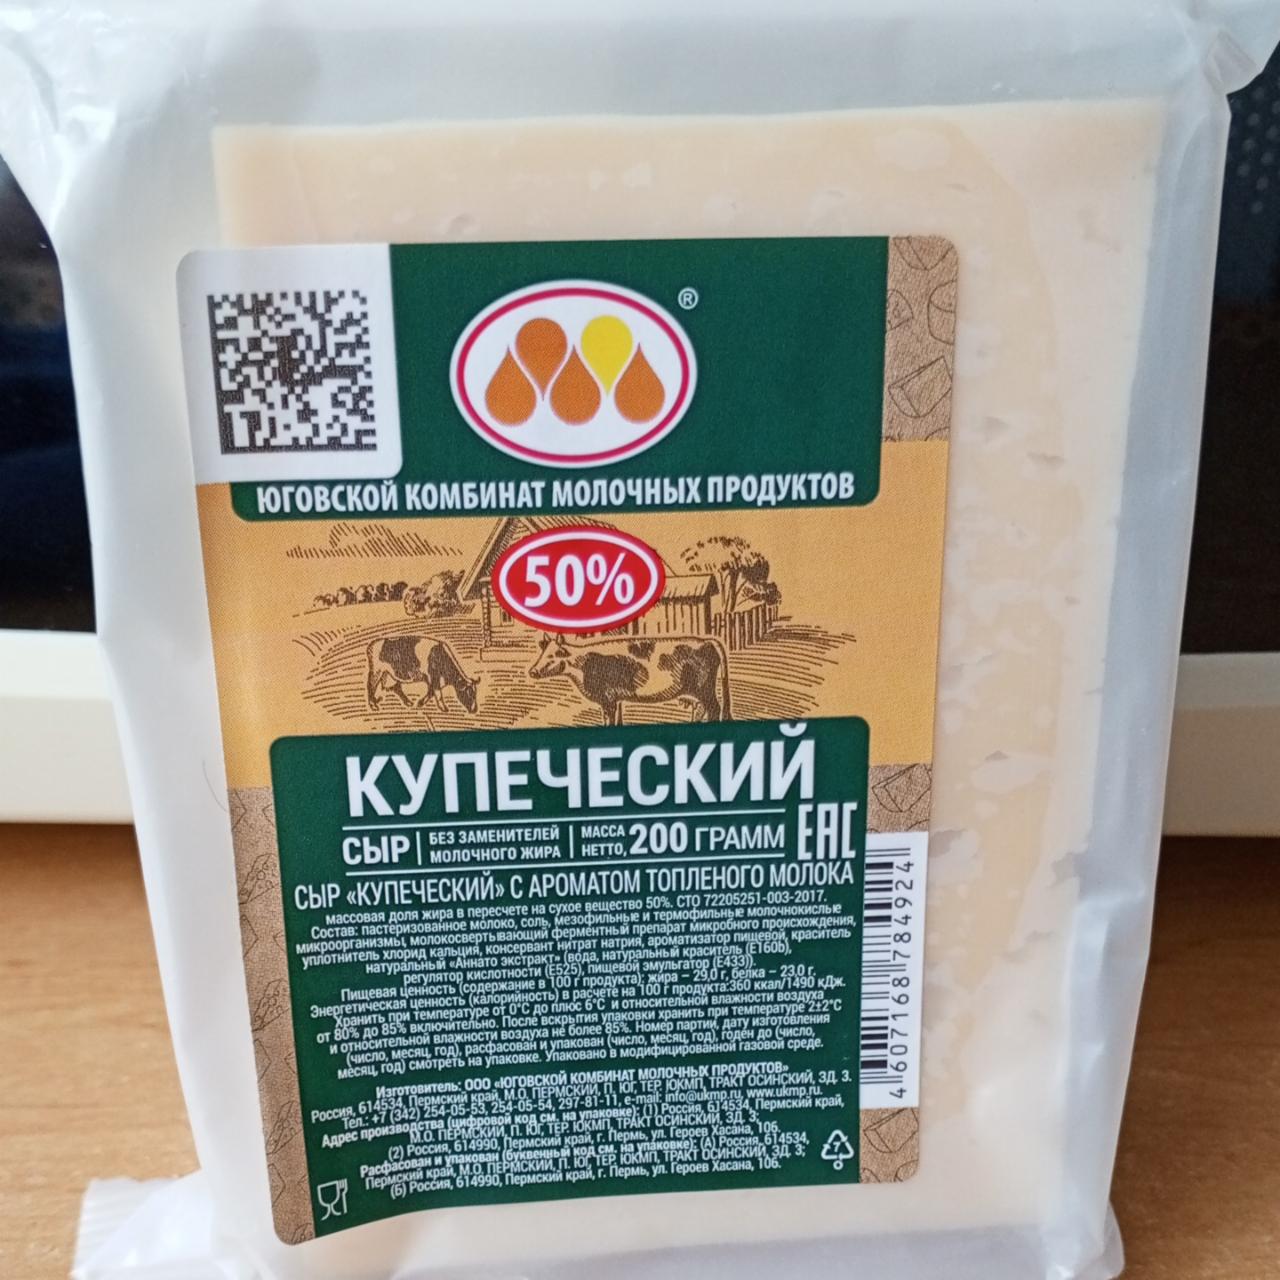 Фото - Сыр Купеческий с ароматом топлёного молока Юговской КМП ЮКМП